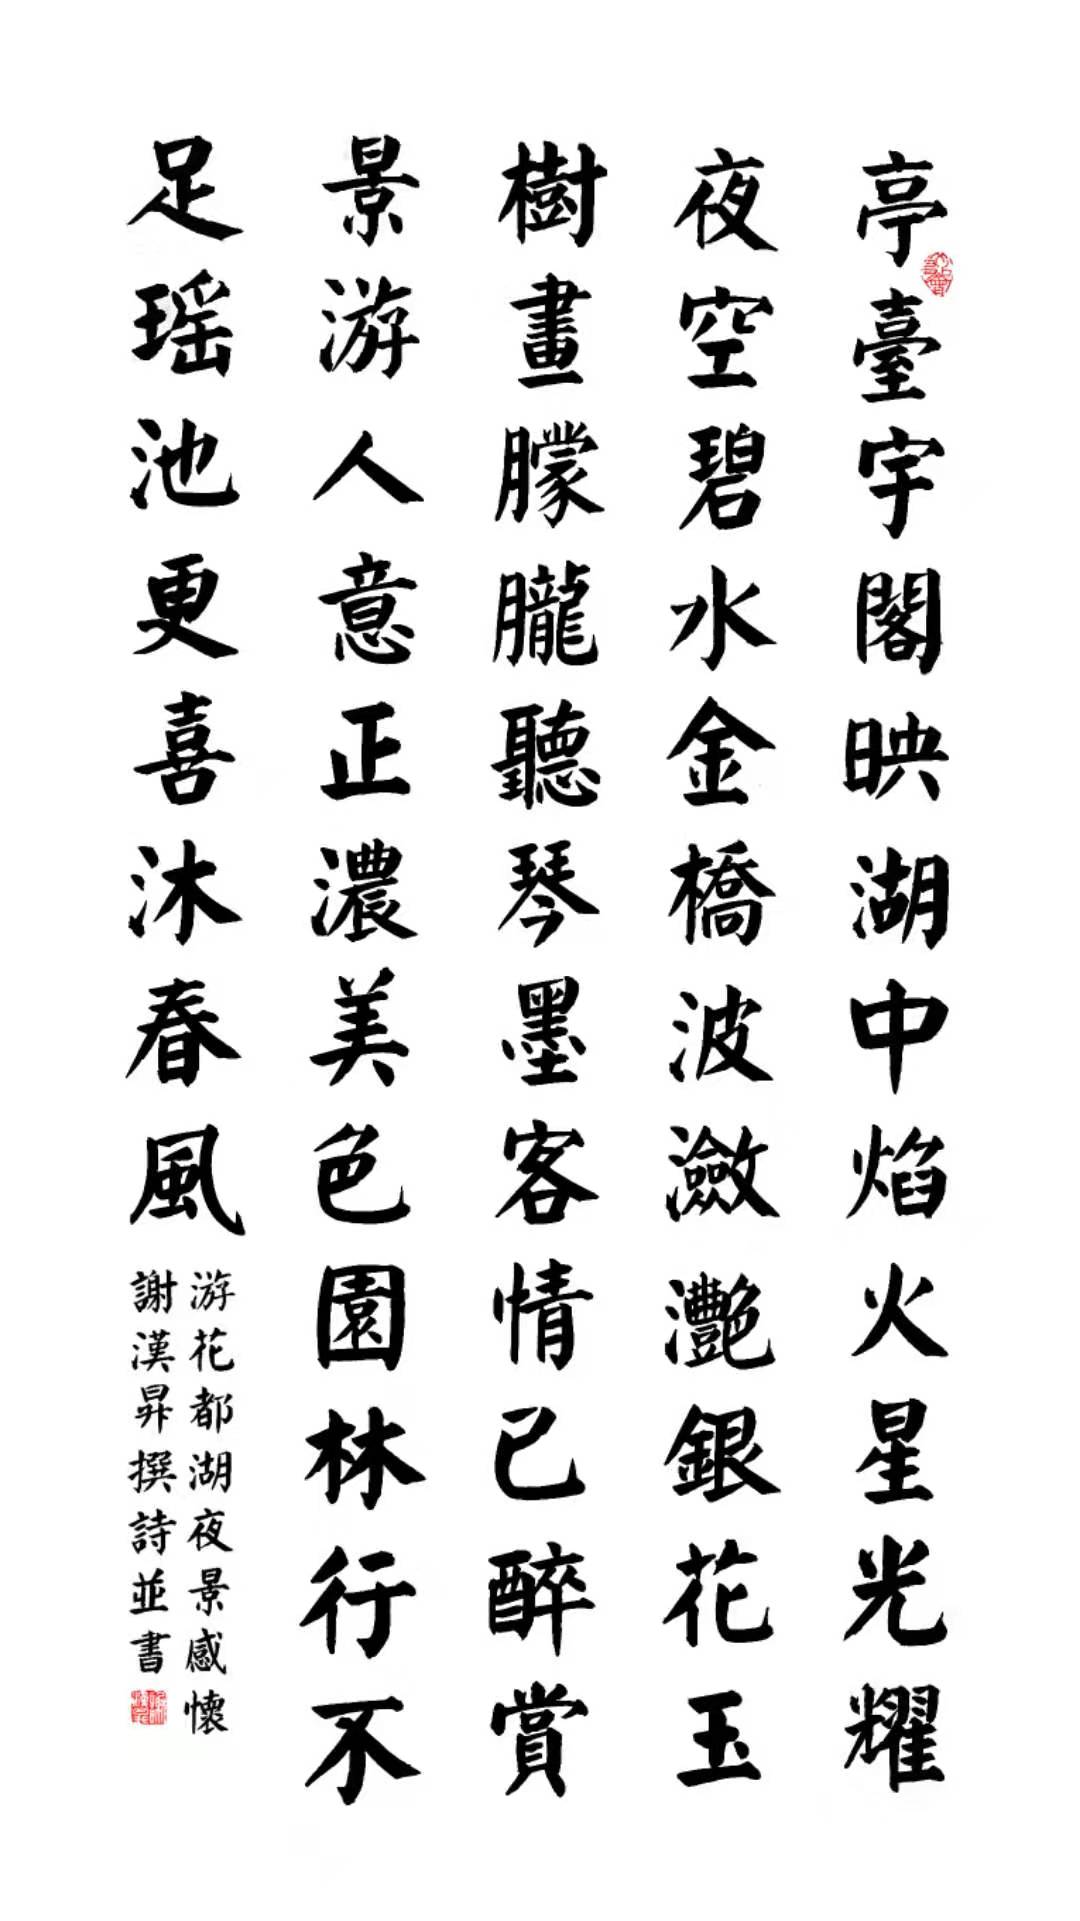 谢汉升，字实在、号乐昌。广东省广州市人。刚踏入青年时代已经能熟练地掌握和书写中国的书法和美术字的各种字体二十多种。是当代的著名书法家、属书香门第，父亲和爷爷都是远近闻名的书法家，诗人。曾祖父被清朝皇帝敕封为军界的御林郎；曾祖父的父亲也是当时文化教育界的儒林郎。现有碑文为证。谢汉升1954年生，在教坛上多年任′教文科和书法、美术。；是中国书画艺术家协会会员；广东省书法家协会会员；广东省中华诗词学会会员；广东省楹联学会会员；广东南雄珠玑巷宝树联谊会副会长；广东宝树文化经济促进会副会长；广州印章协会理事；广东炭步书法家协会会长；广东省花都作家协会会员；广州市永盛工艺社社长。多年来，他参加香港中外文化推广交流协进会举办的“共绘香江两地情书画大赛中获得铜奖；广东省群艺馆多年举办“和谐广东”大型书法比赛活动中多次分别获得优秀奖、一等奖、铜奖、金奖；荣获全国新长城艺术大赛“中国当代著名书法家"荣誉称号并特等奖。      在今年广东南雄珠玑巷谢氏大宗祠全国征联的大赛活动中荣获一等奖。